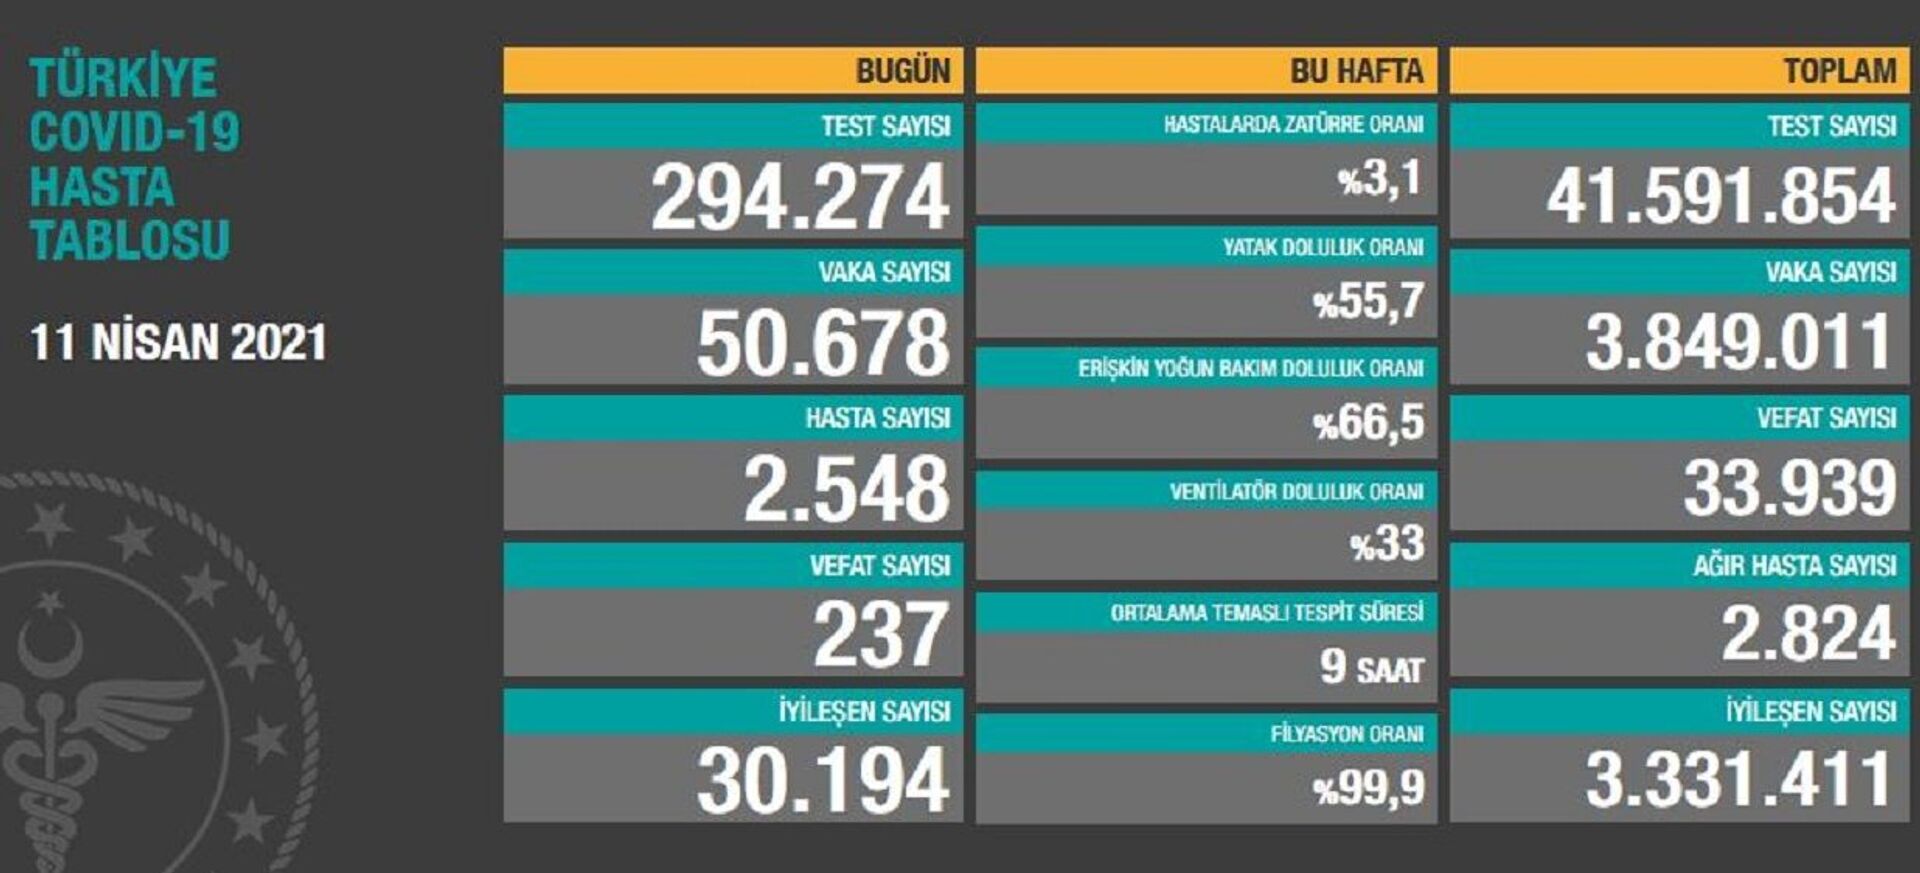 Türkiye'de son 24 saatte 50 bin 678 kişinin testi pozitif çıktı, 237 kişi hayatını kaybetti - Sputnik Türkiye, 1920, 11.04.2021